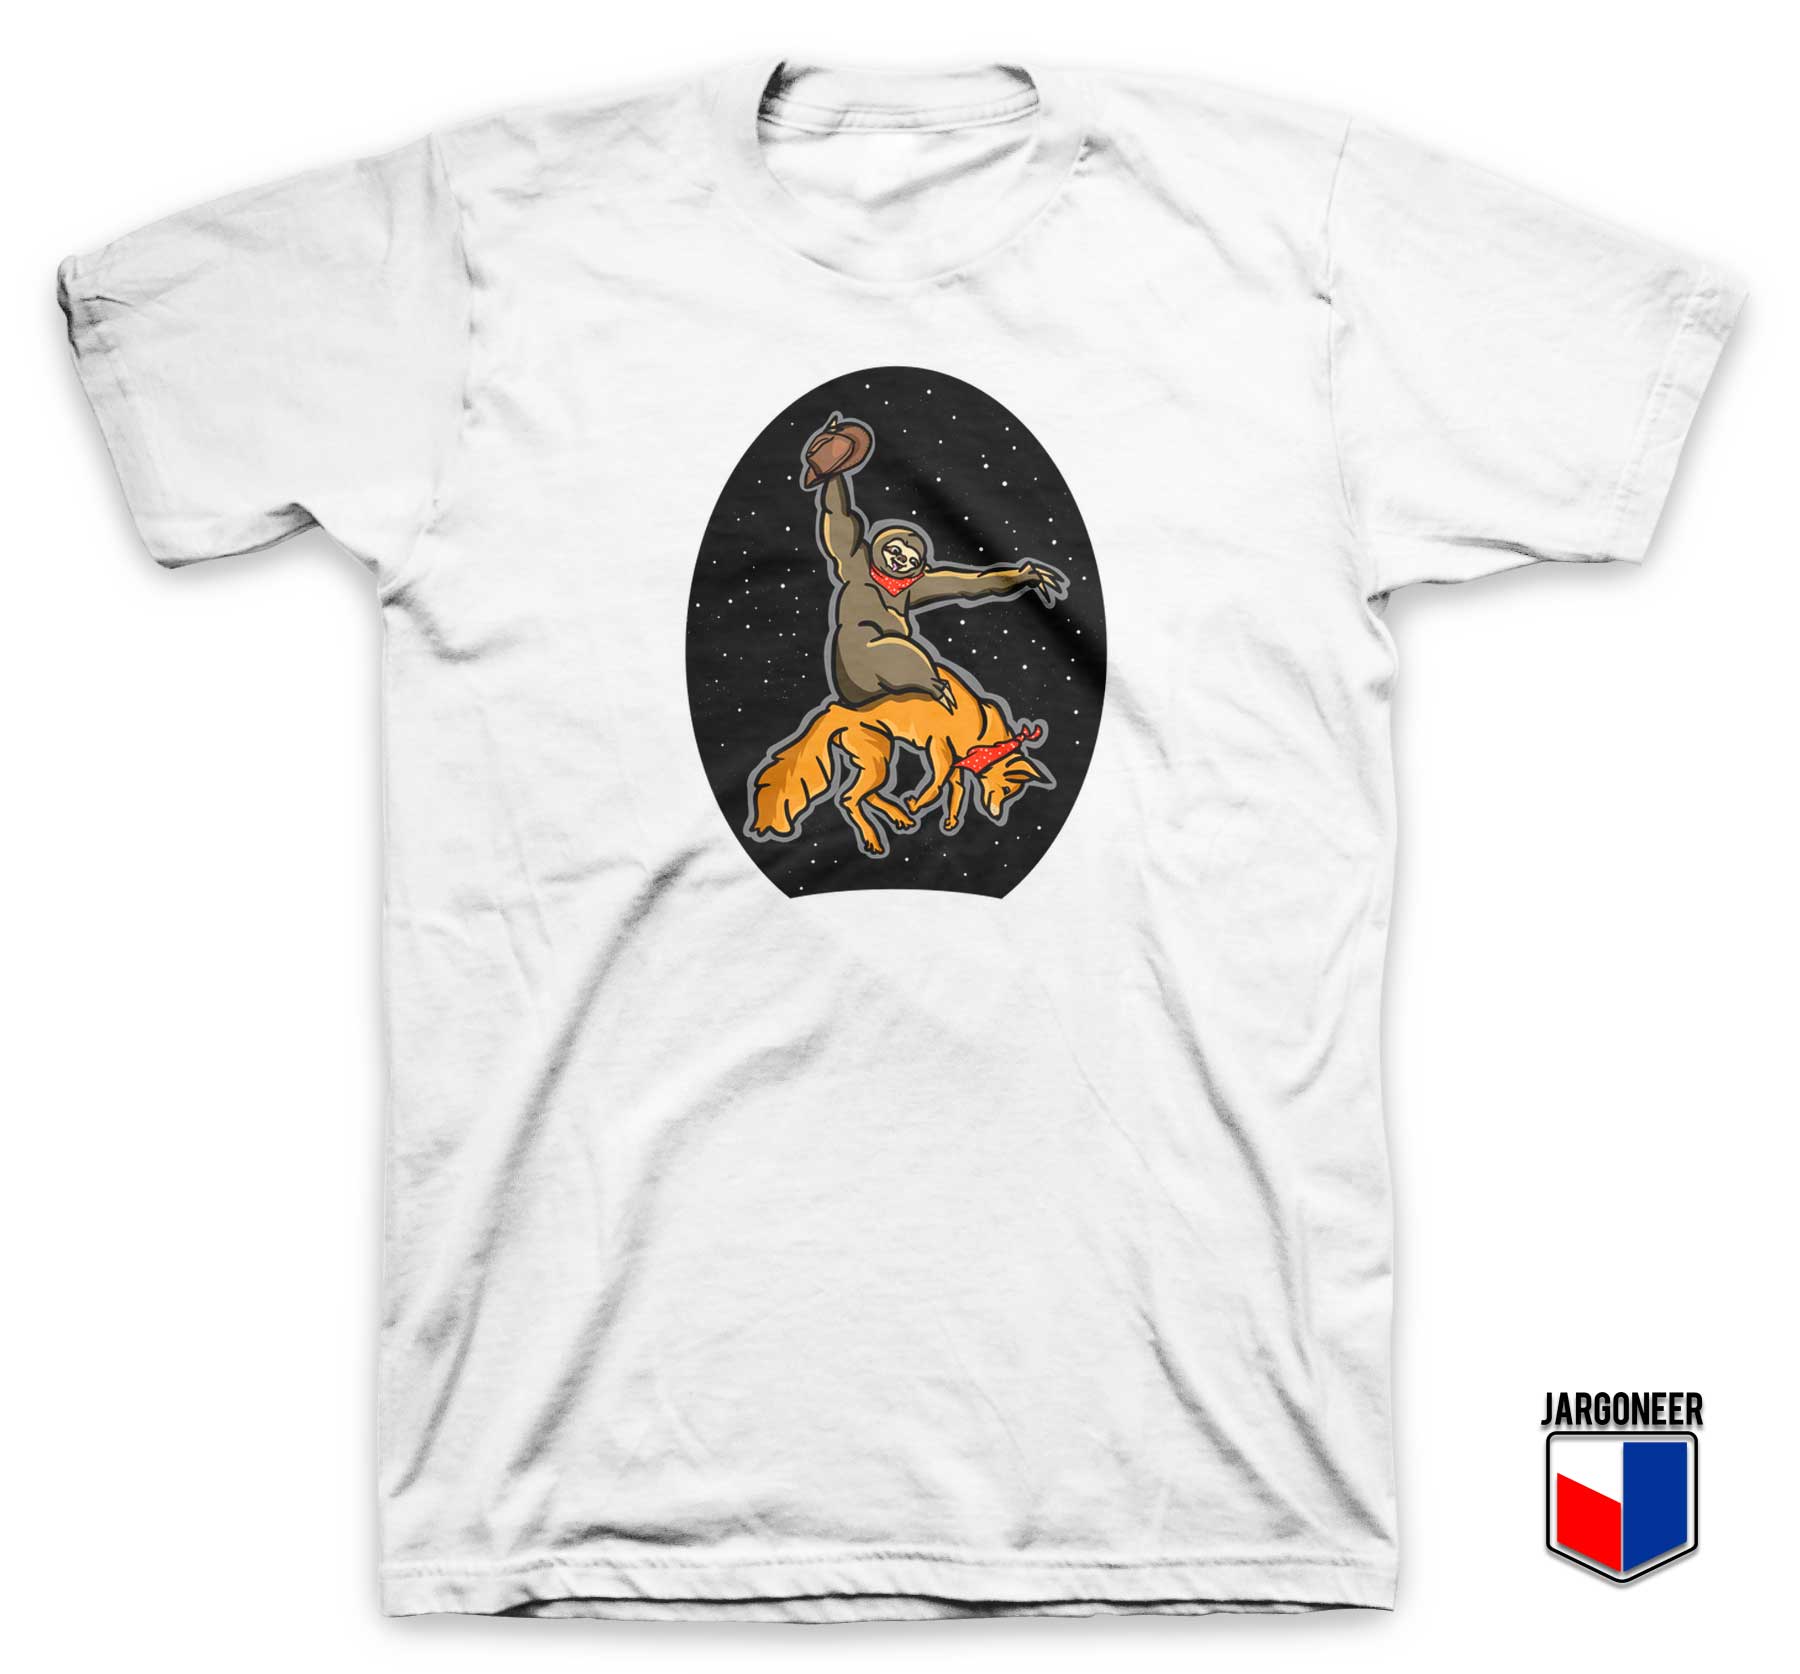 Sloth Riding Fox T Shirt - Shop Unique Graphic Cool Shirt Designs